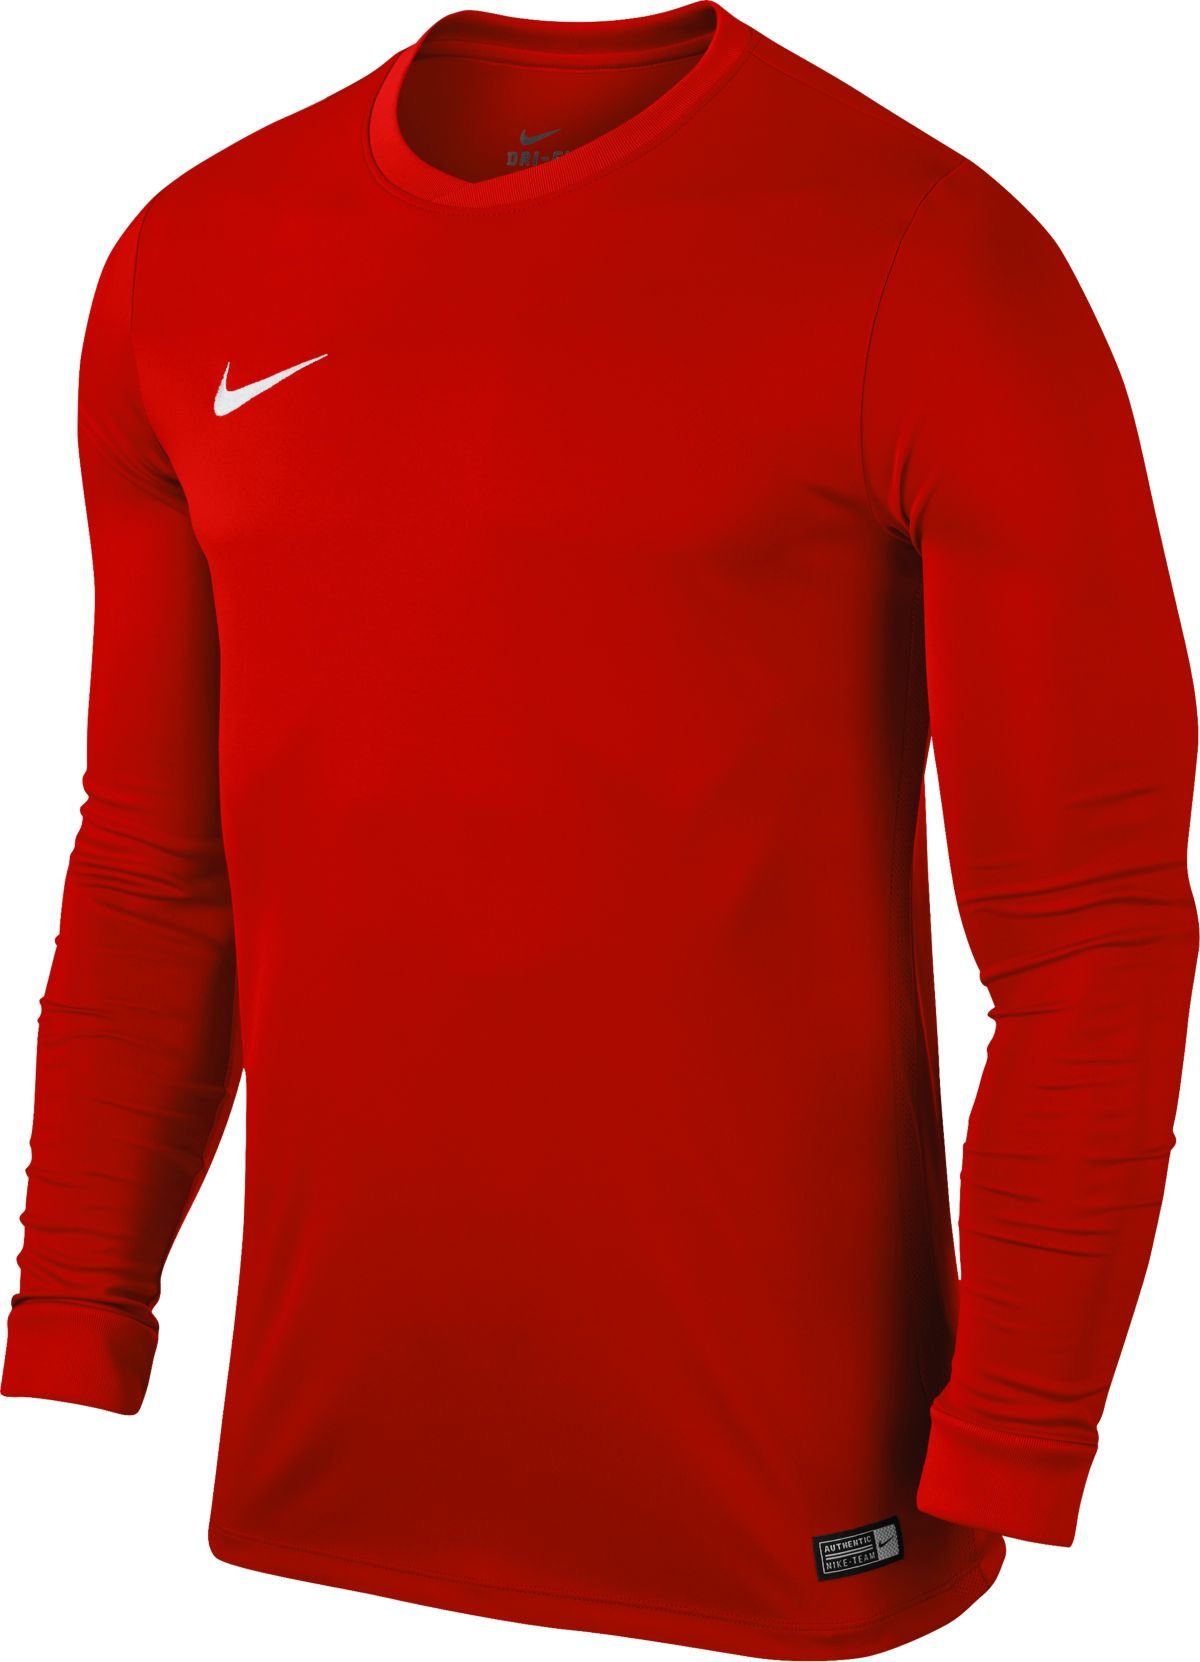 Long-sleeve shirt Nike LS PARK VI JSY 